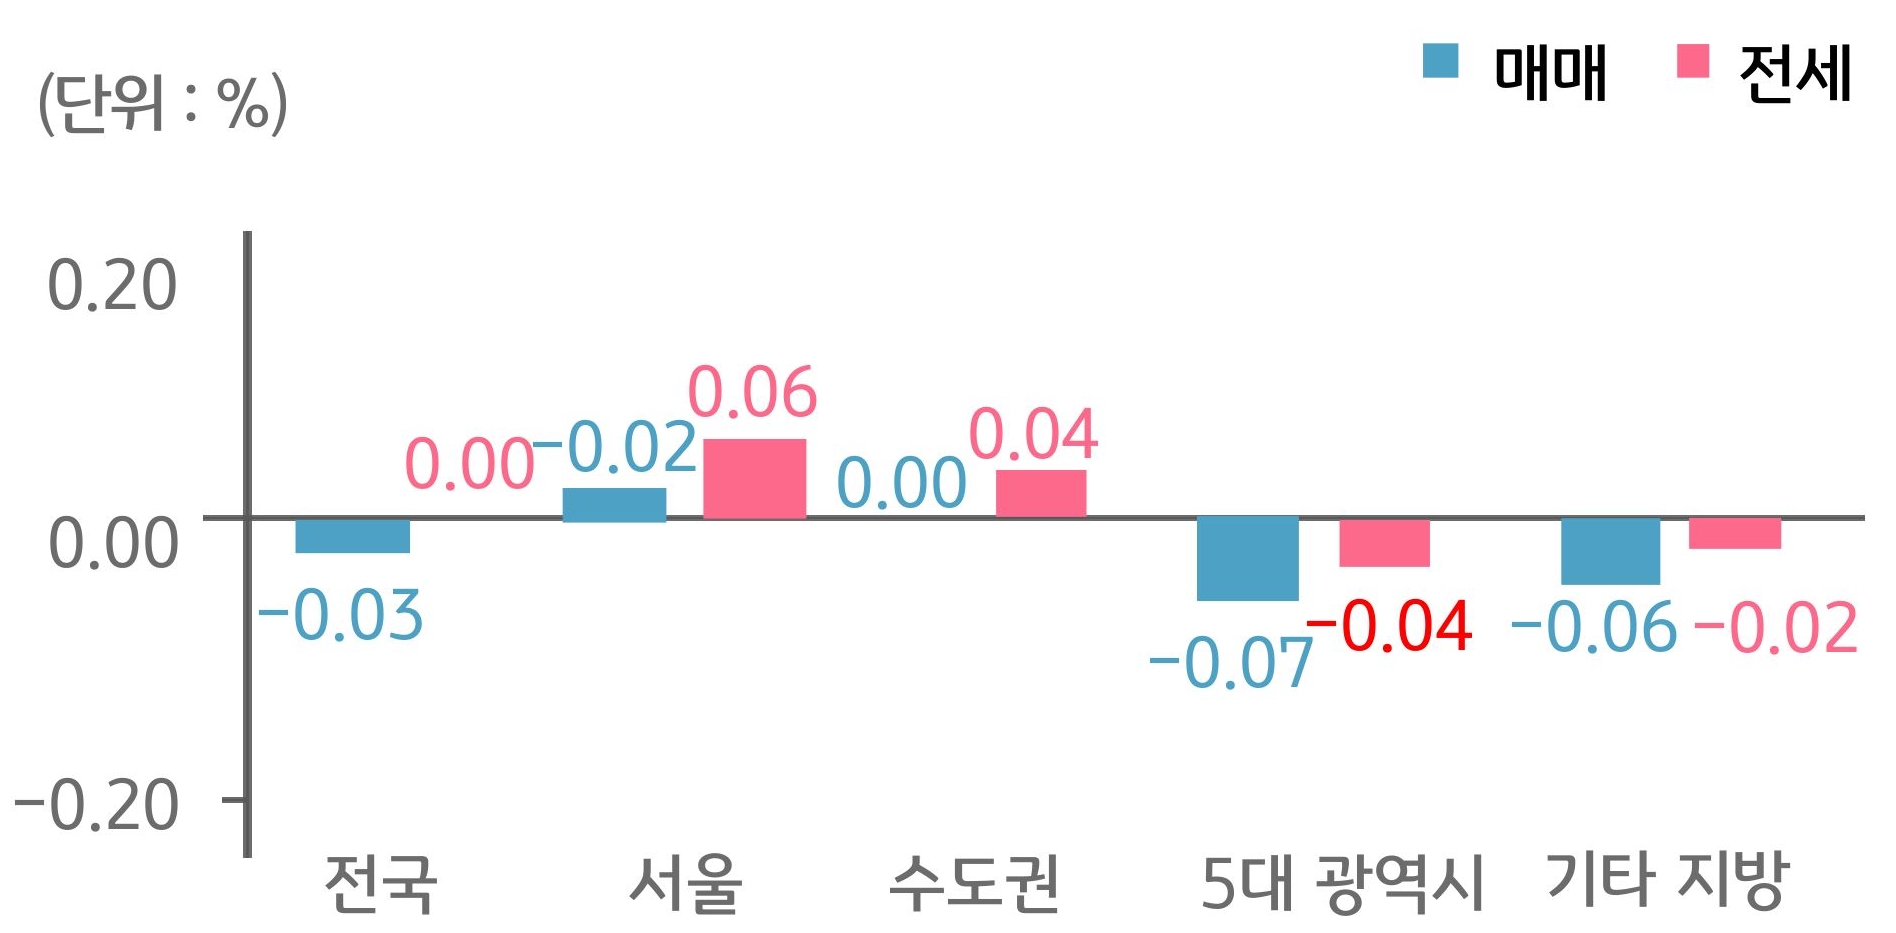 '전국', '서울', 수도권, 5대 광역시, 기타 지방으로 구분하여 '매매'와 '전세가격'의 증감률을 그래프로 보여주고 있다.